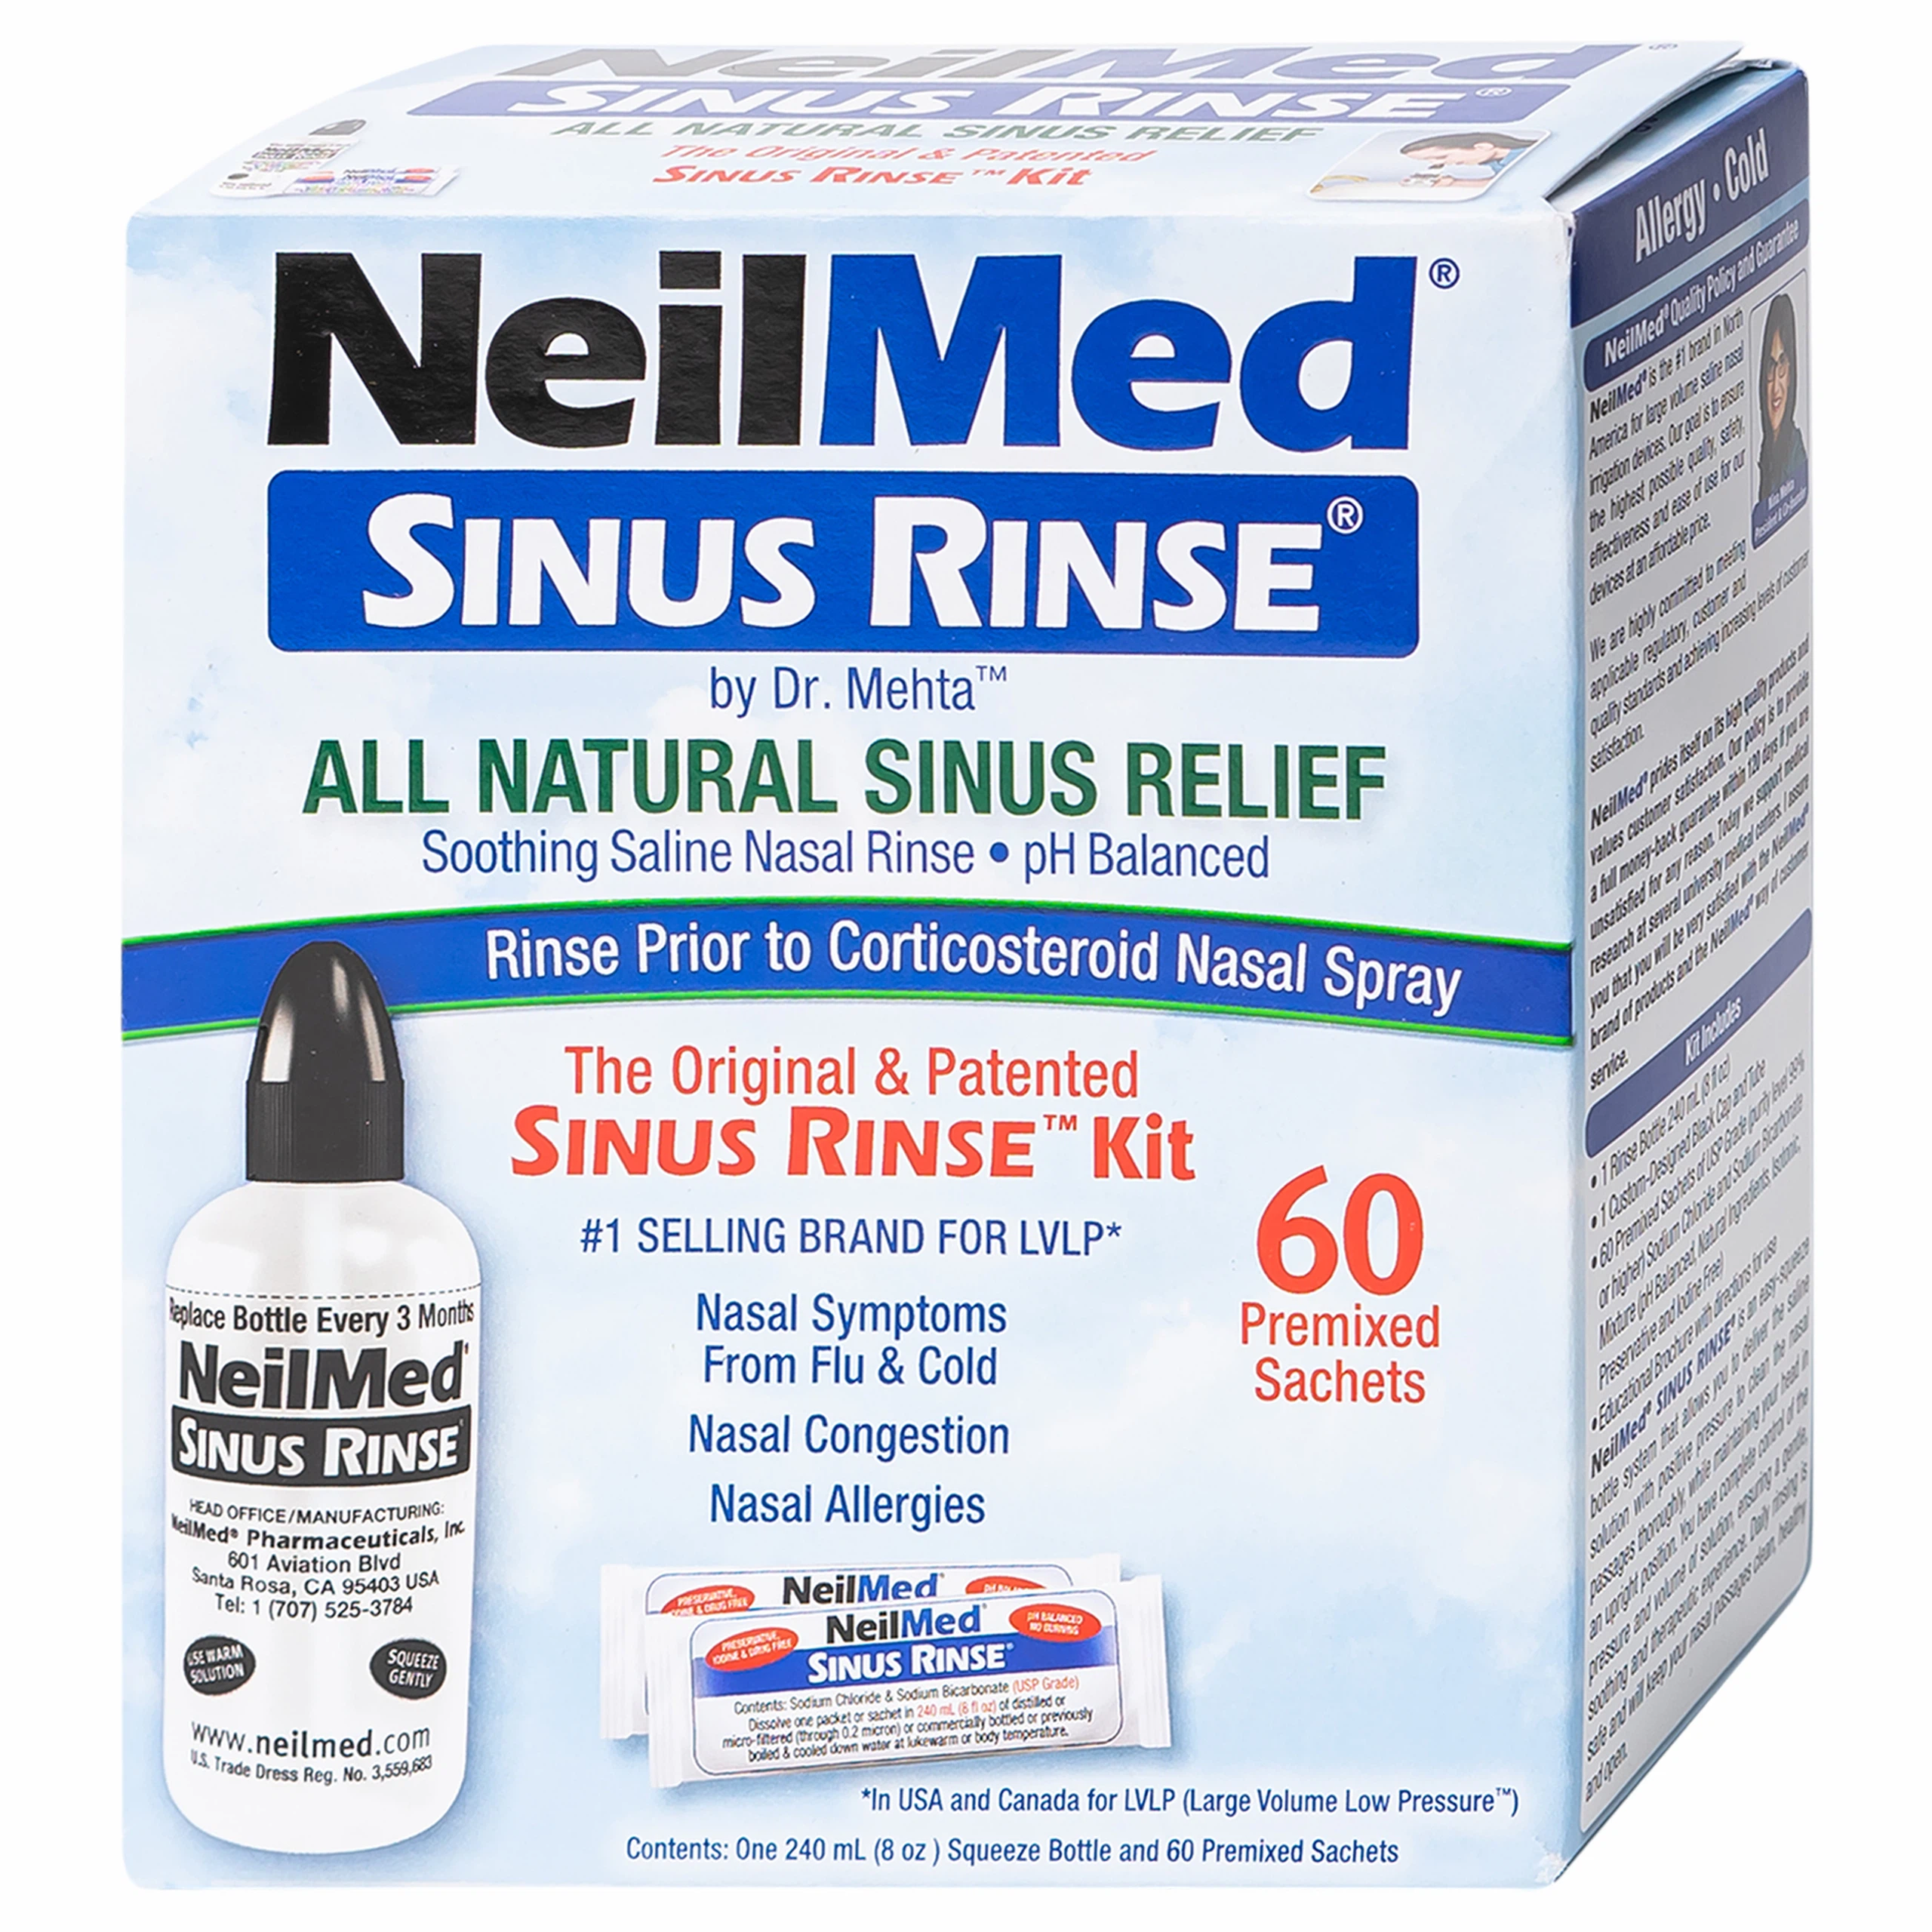 Bộ dụng cụ 1 bình + 60 gói bột rửa mũi NeilMed Sinus Rinse làm sạch và ngăn ngừa chứng viêm mũi dị ứng